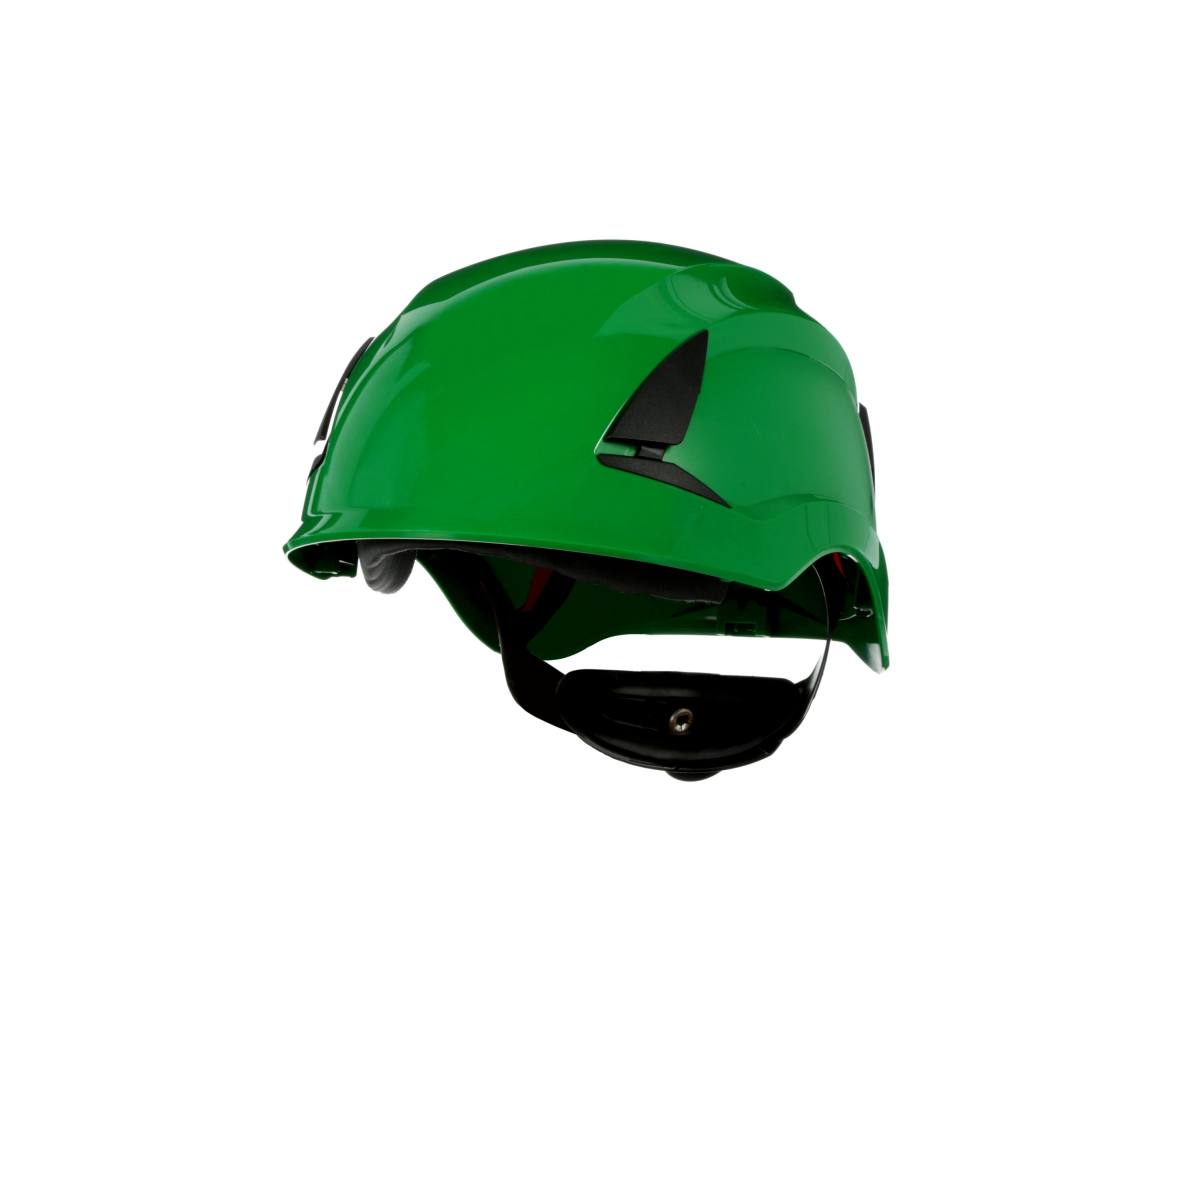 3M SecureFit casque de protection, X5504NVE-CE, vert, non ventilé, CE